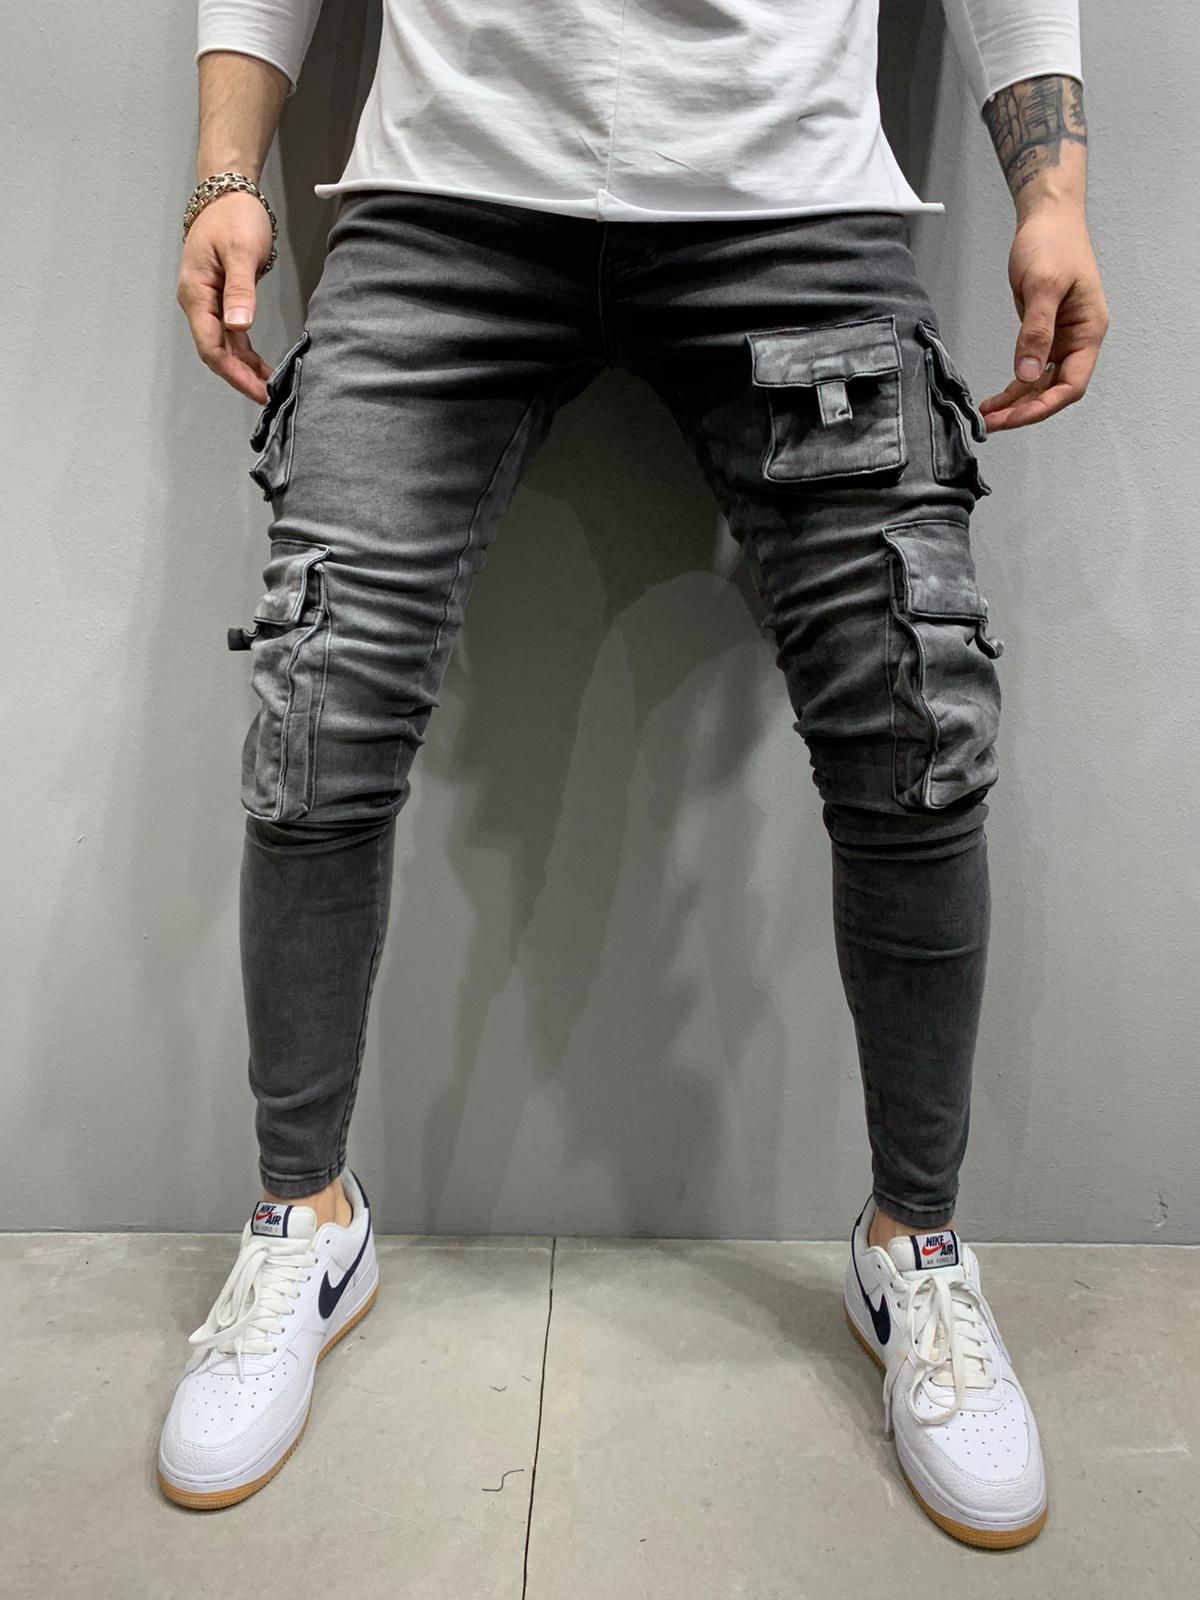 cargo jeans skinny